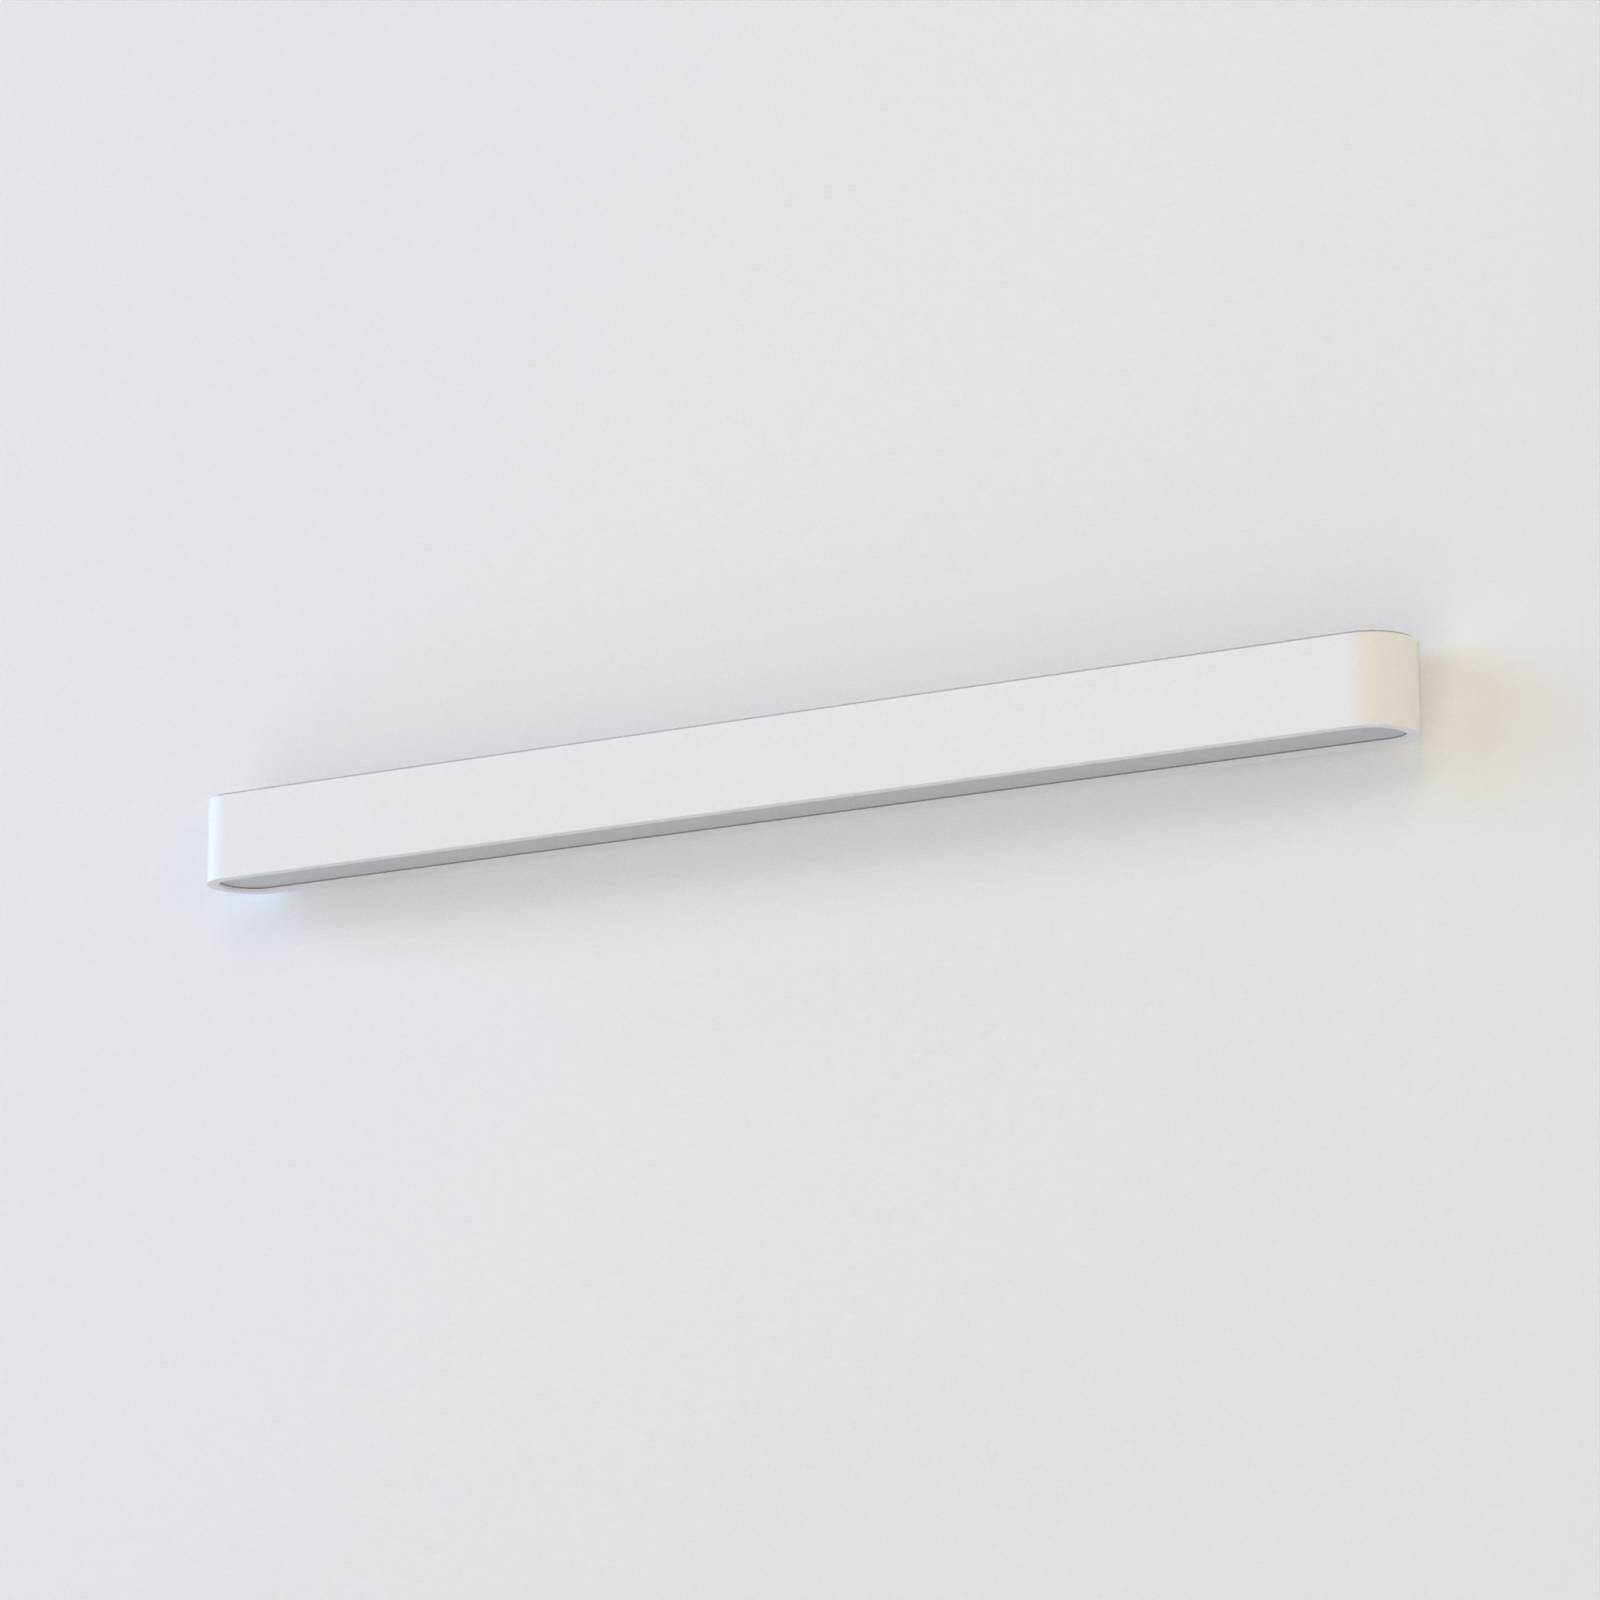 Euluna Měkké nástěnné svítidlo, šířka 90 cm, bílé, hliník, G13